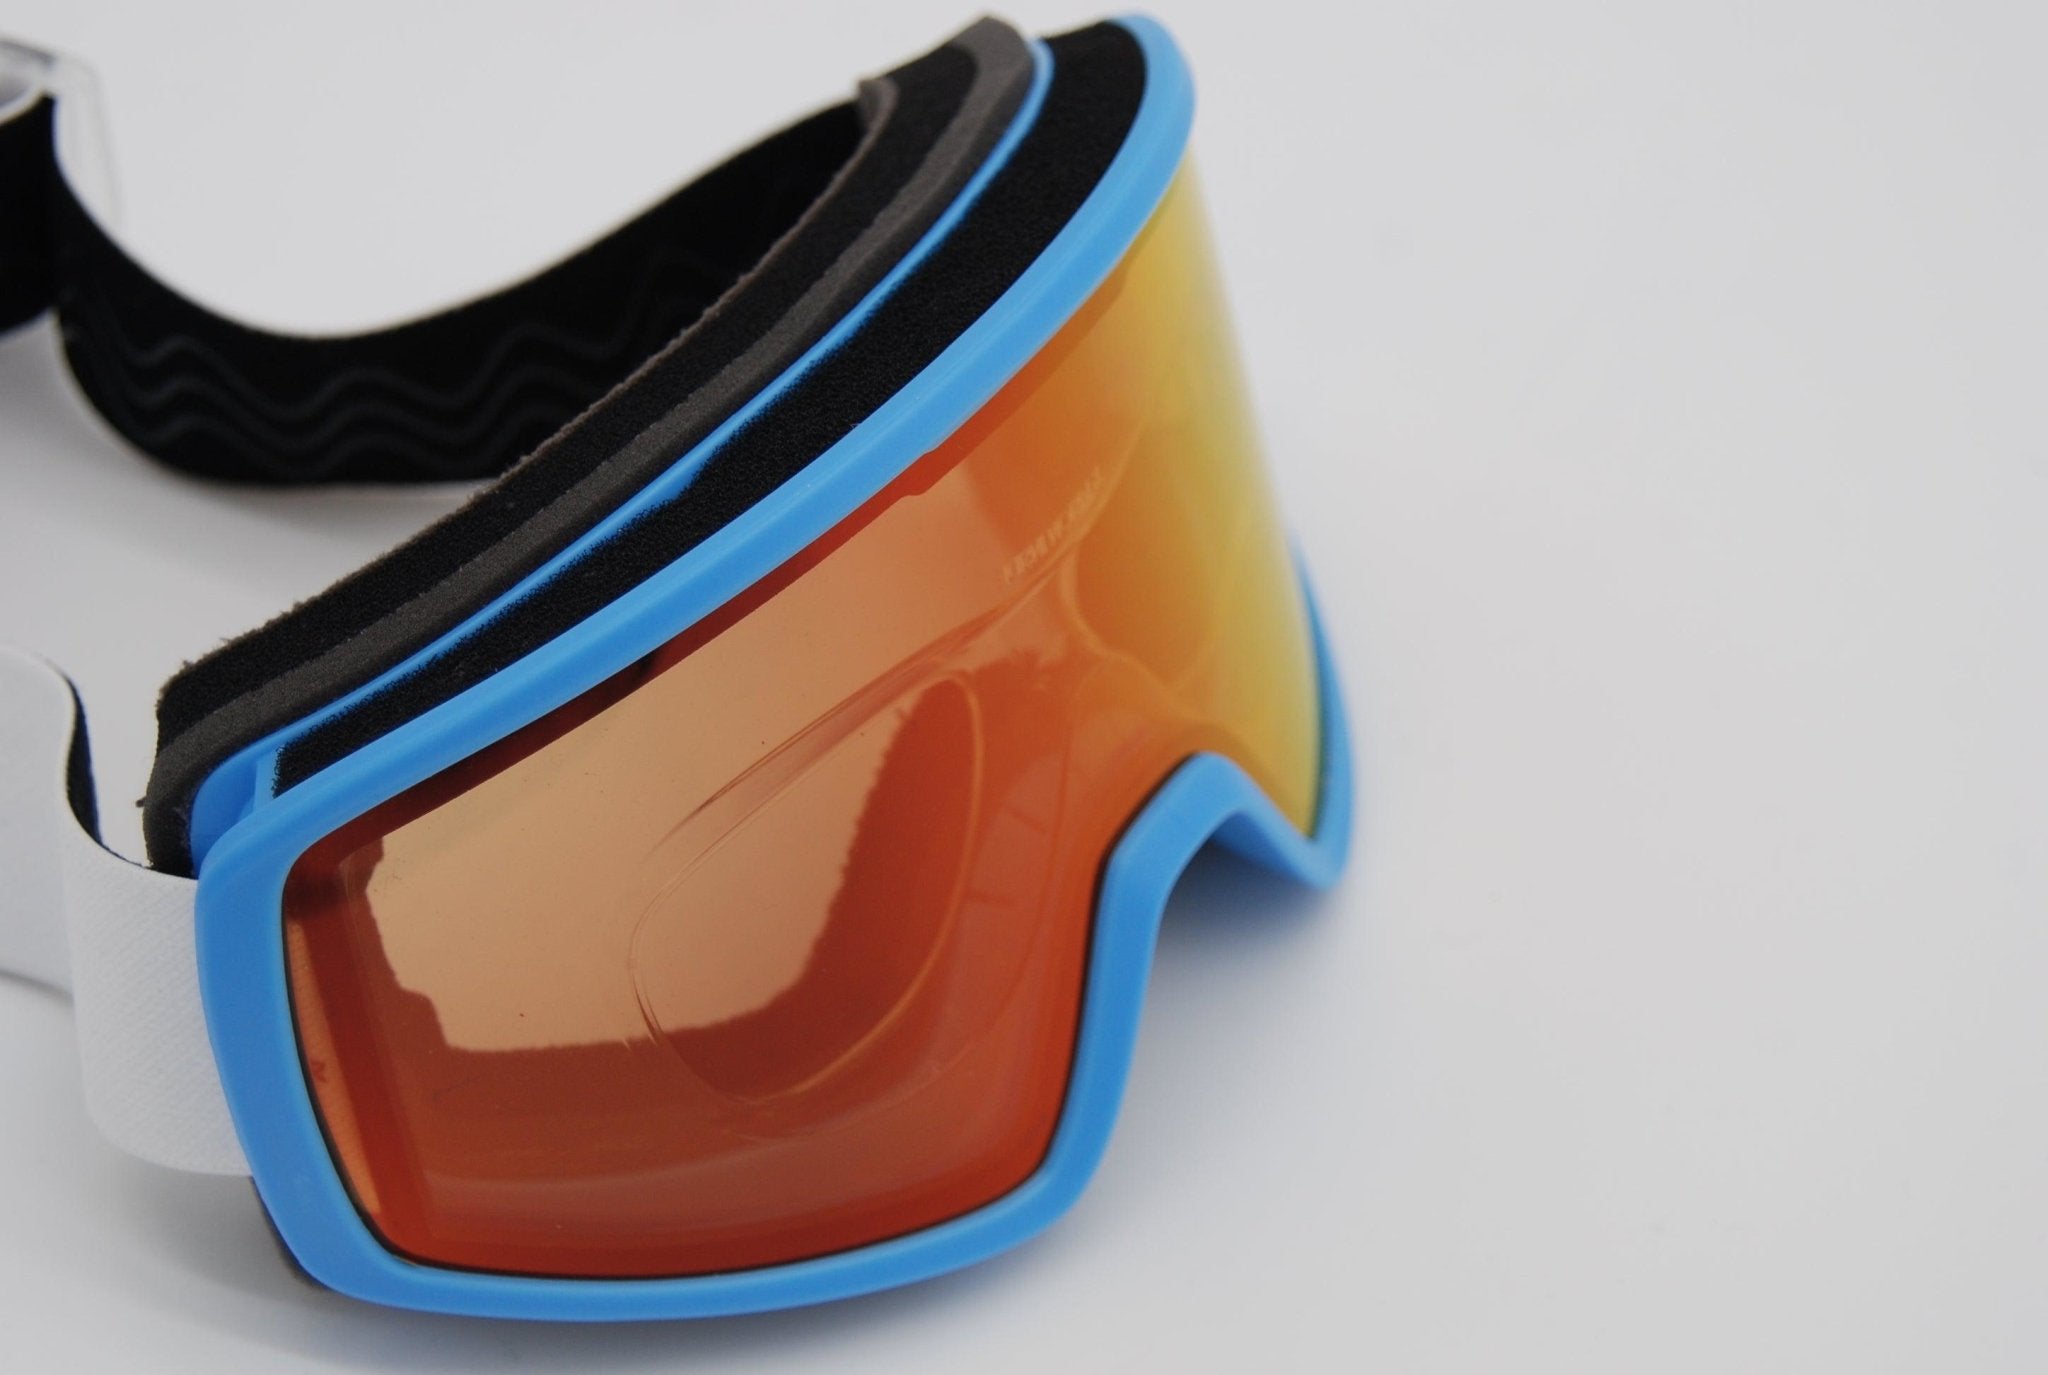 Ski Goggle with prescription - Magnus